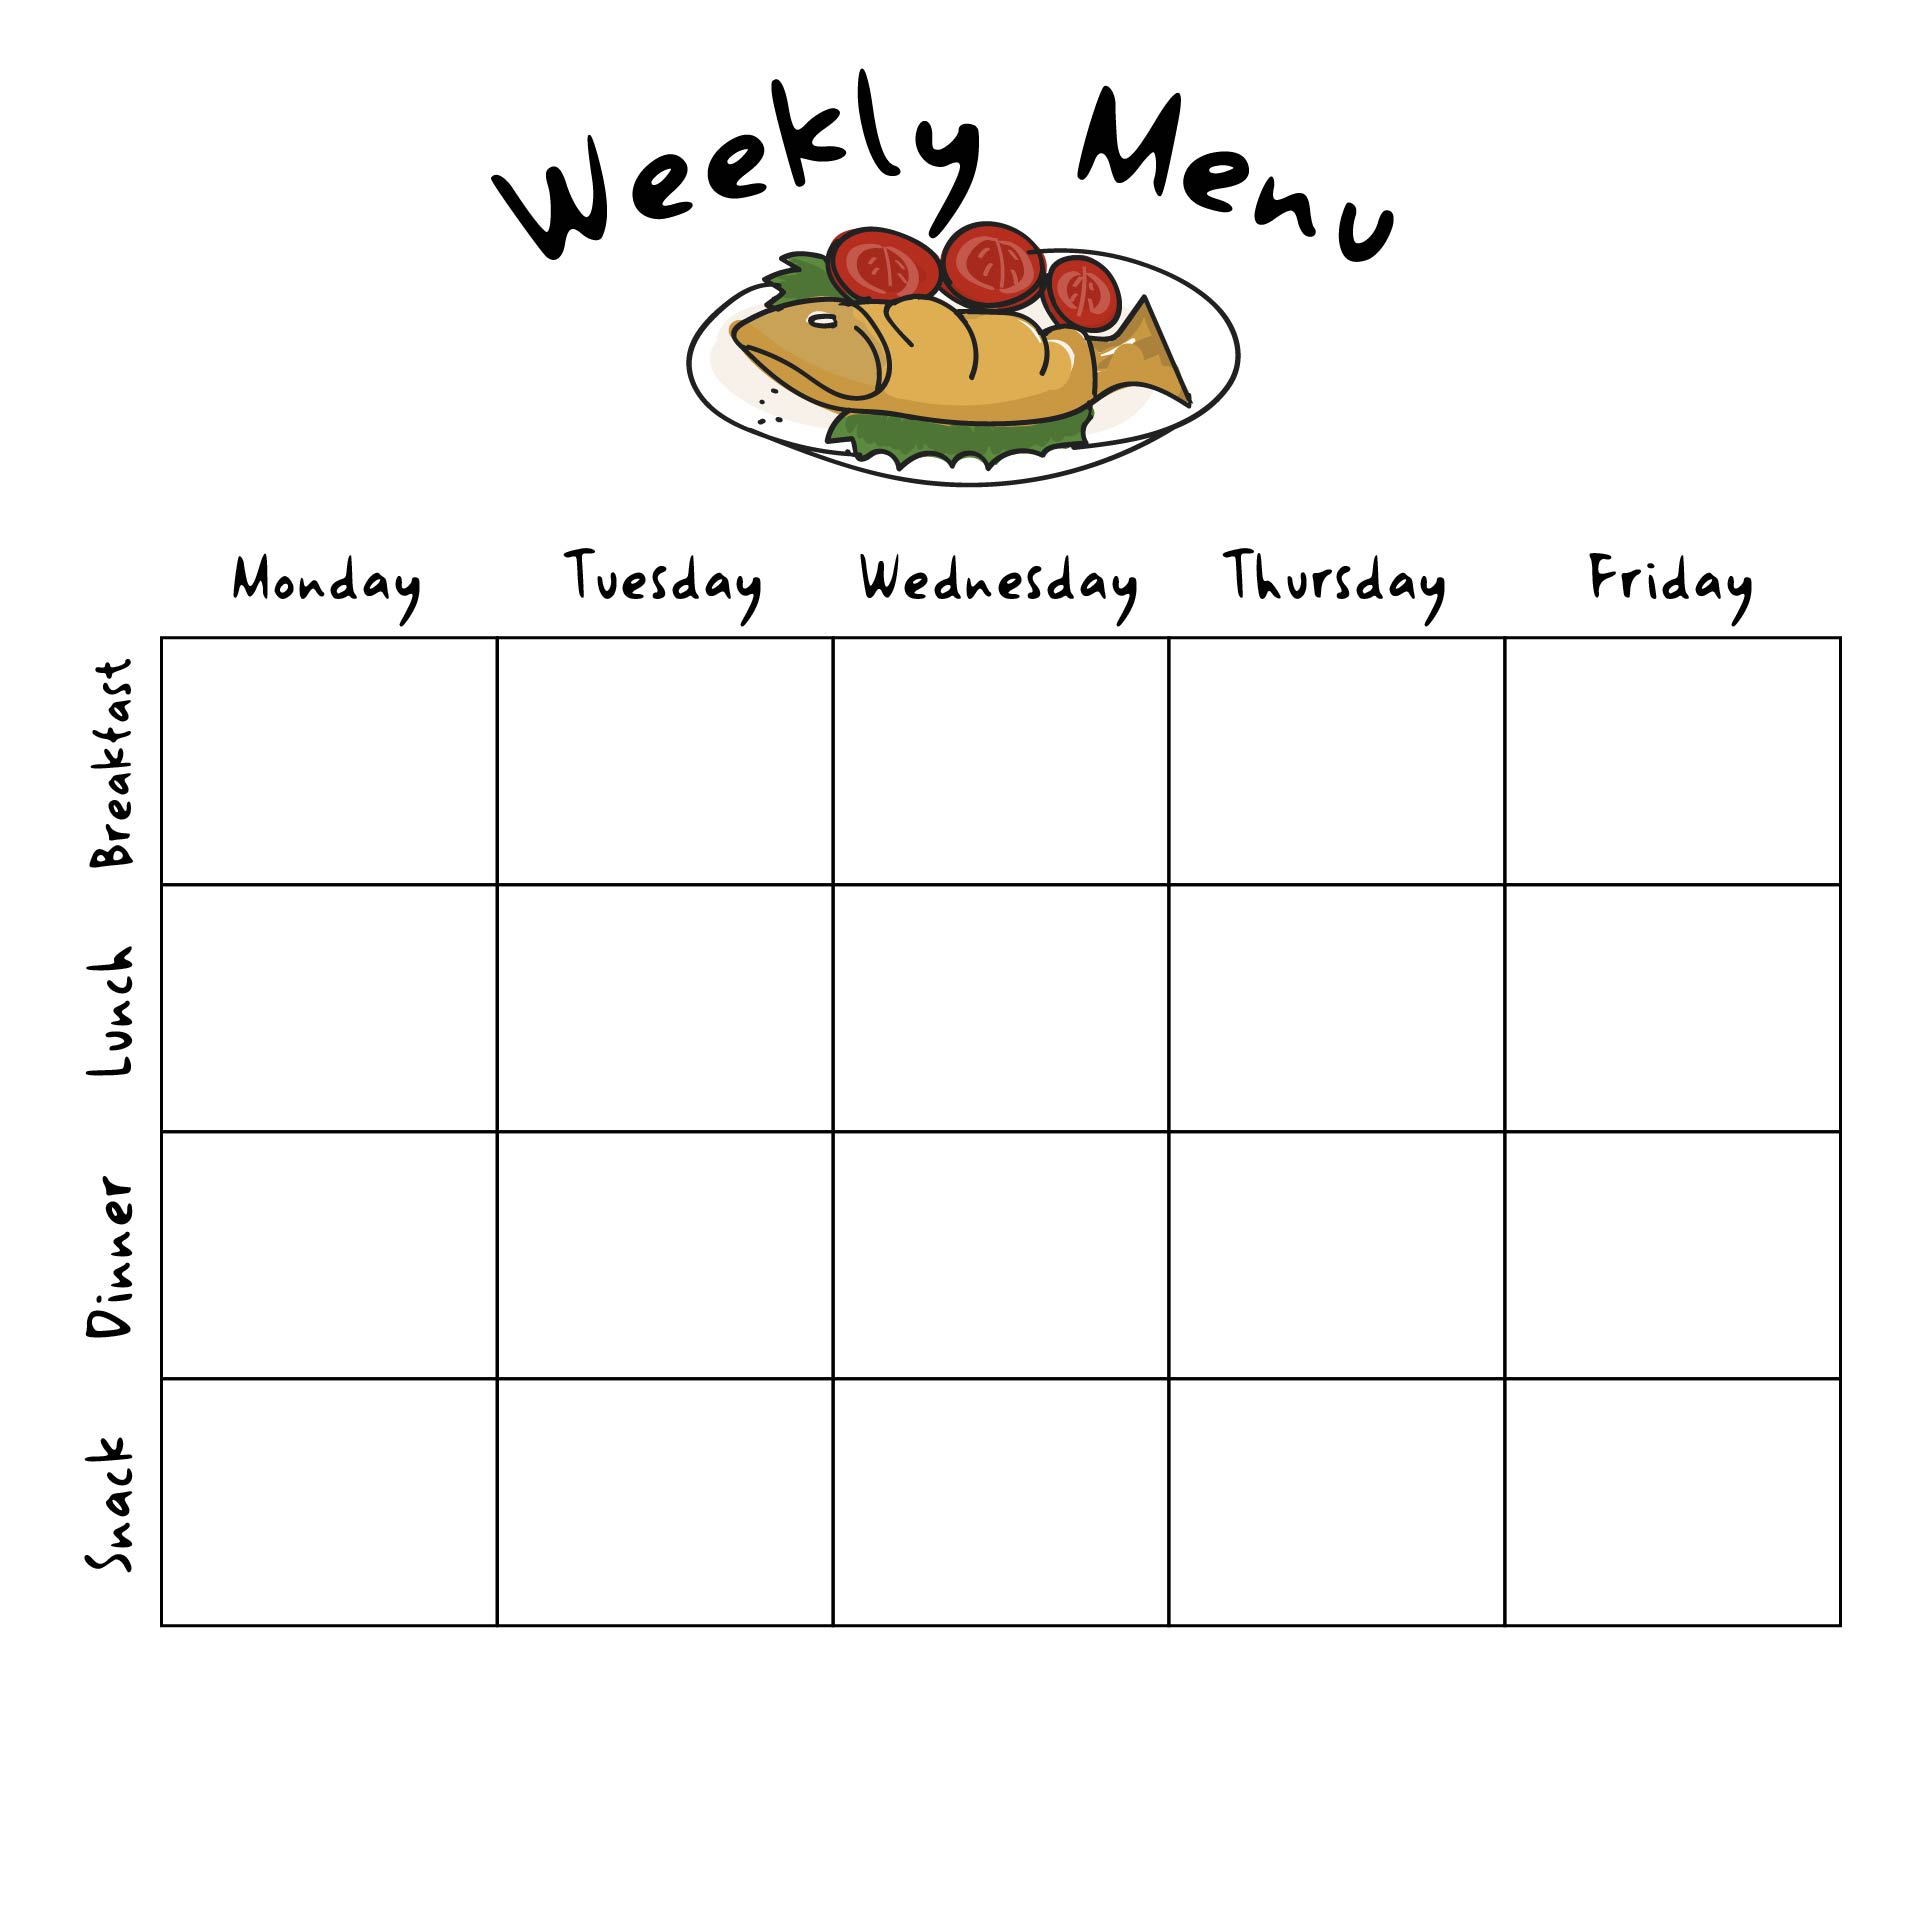 free weekly menu calendar template